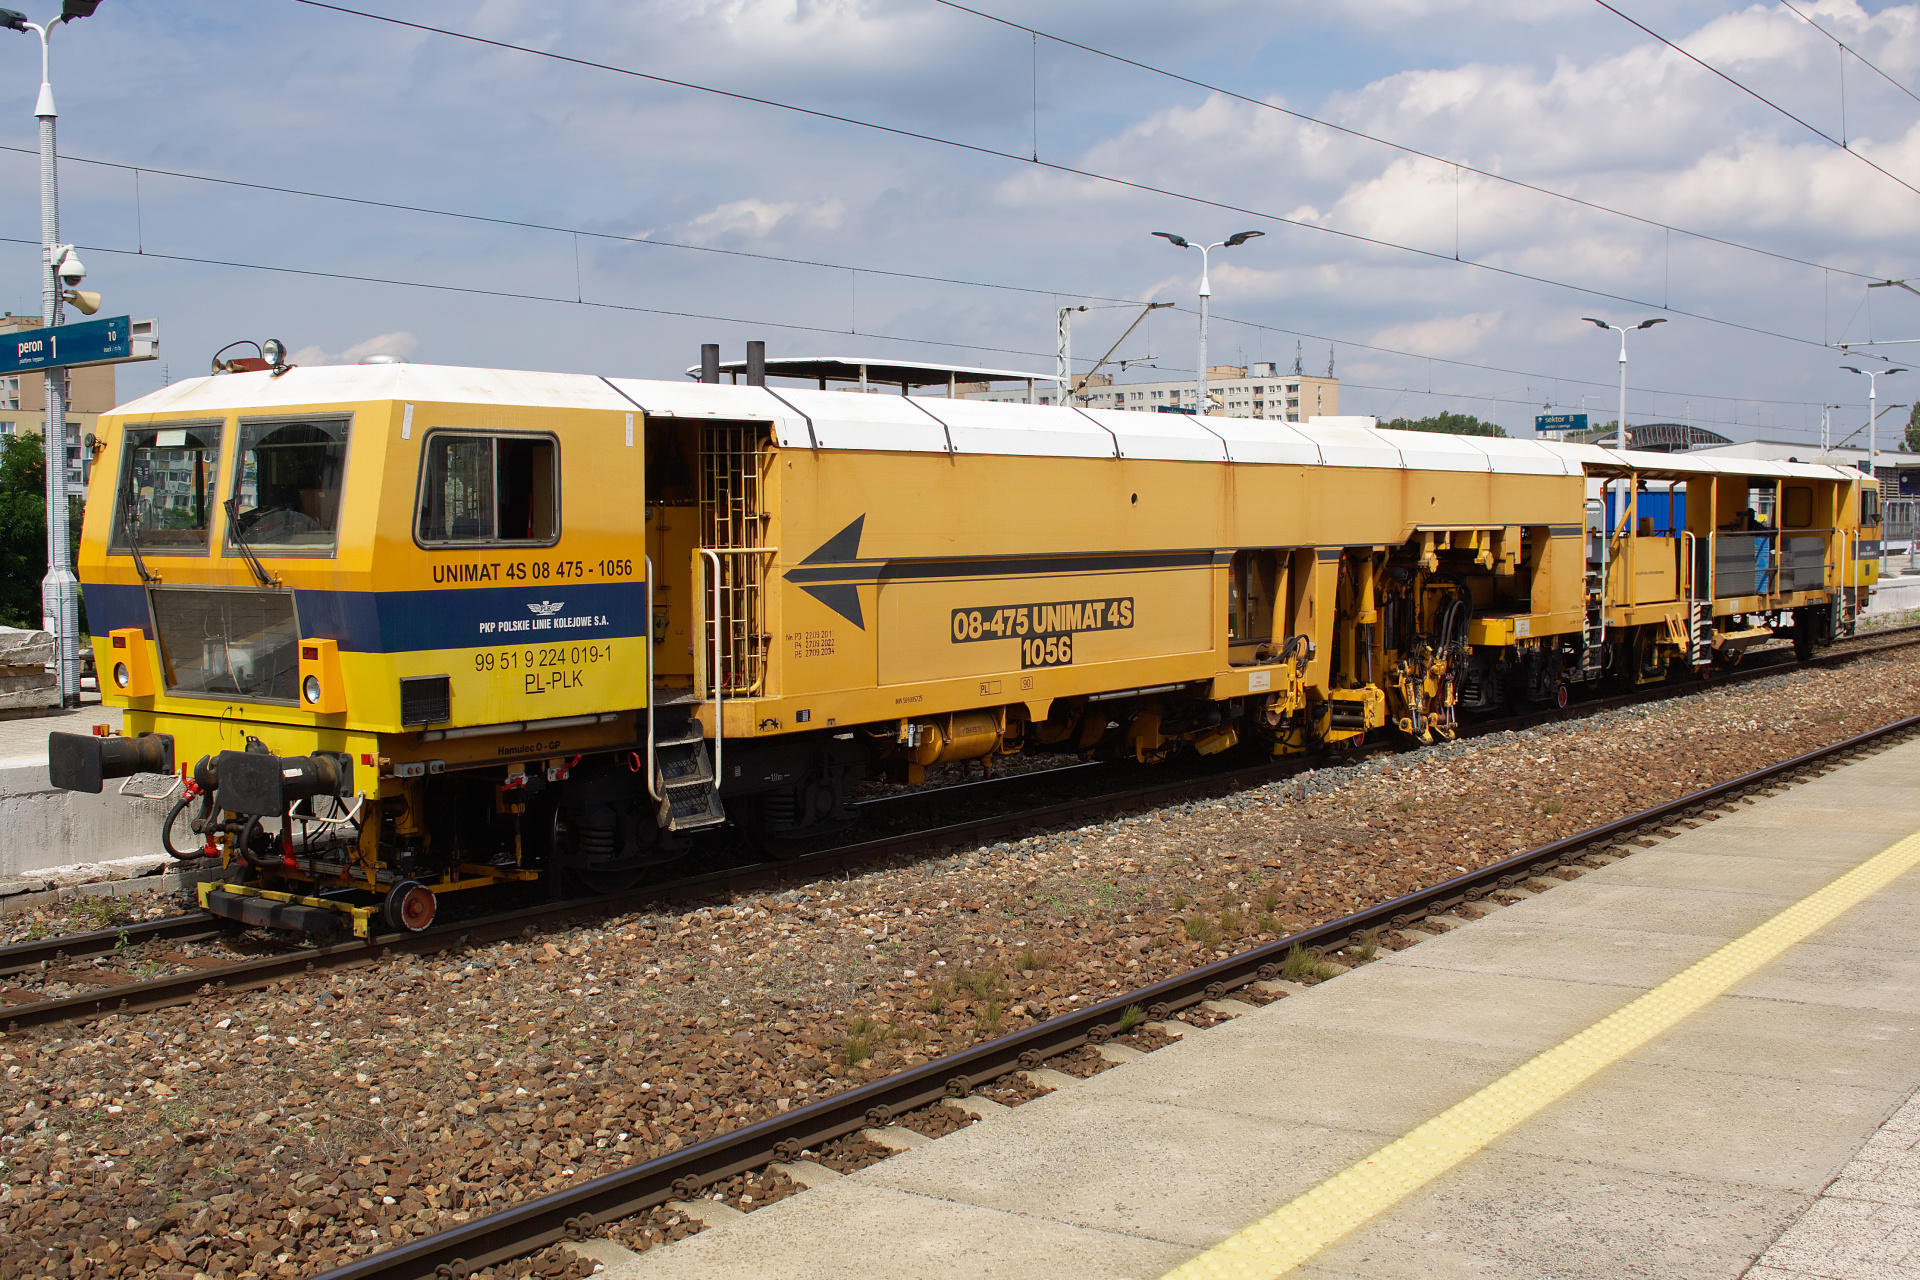 Plasser & Theurer Unimat 08-475/4S 1056 (Pojazdy » Pociągi i lokomotywy » Techniczne)